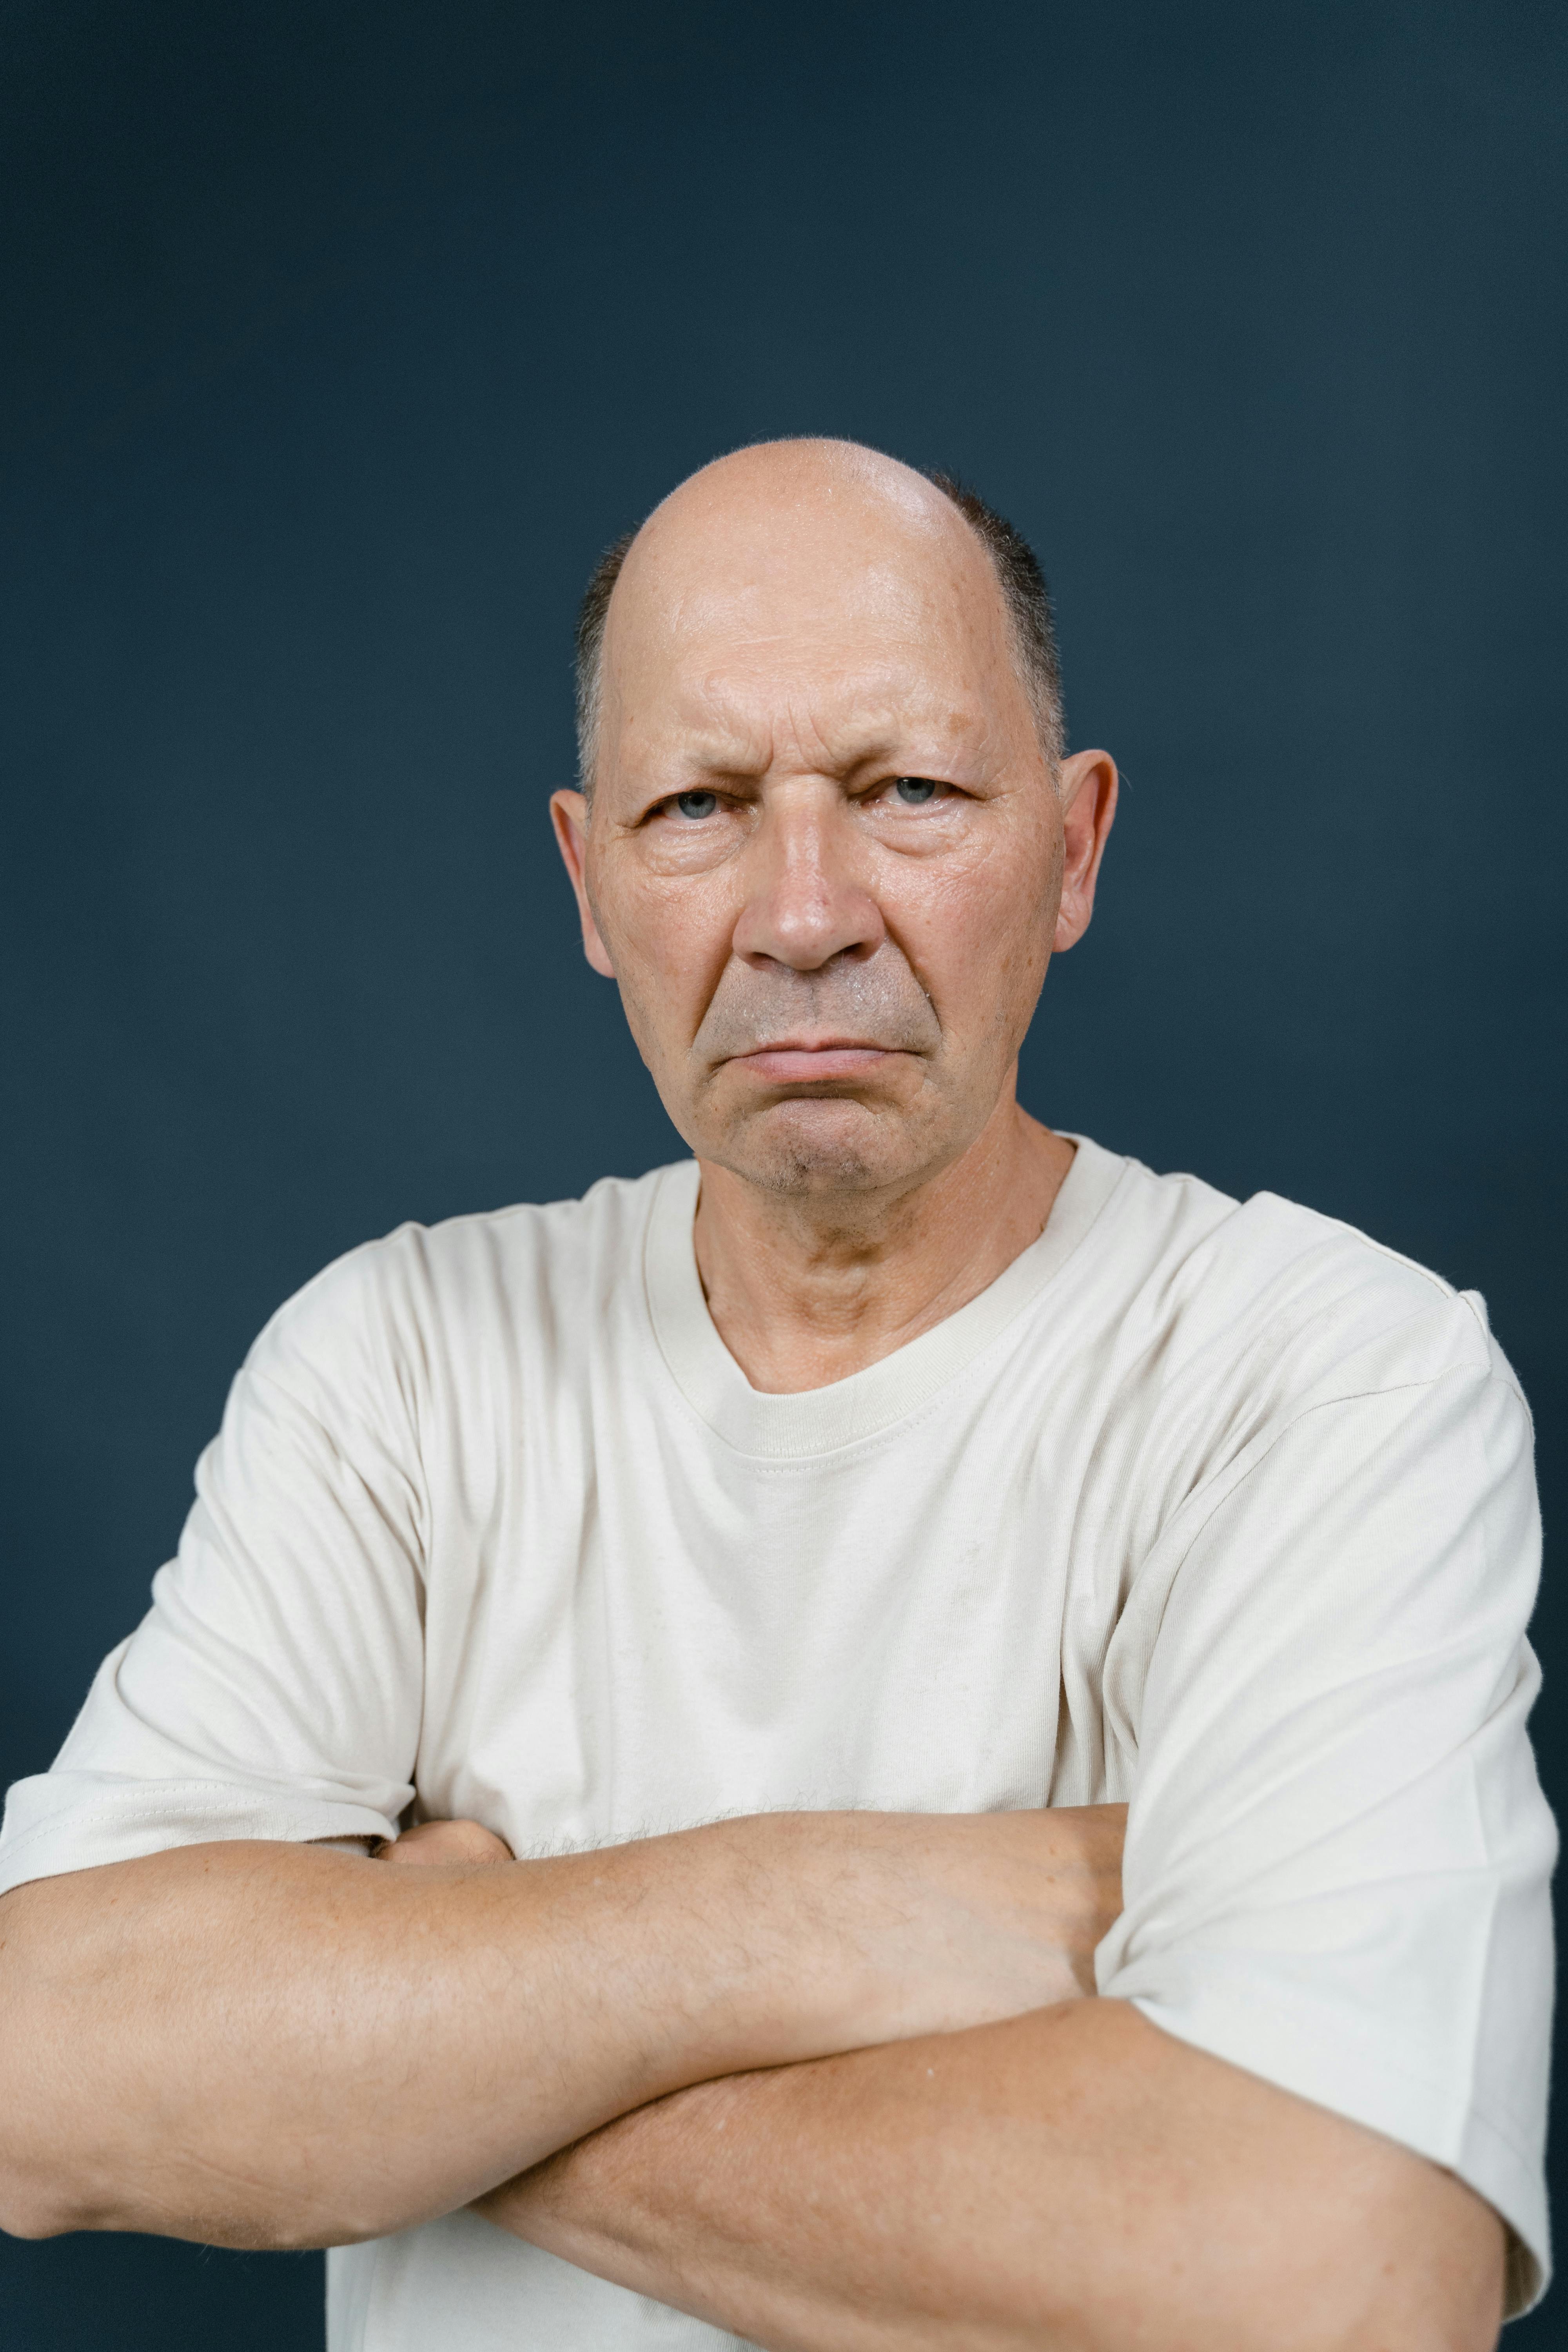 Ein wütender älterer Mann mit verschränkten Armen | Quelle: Pexels